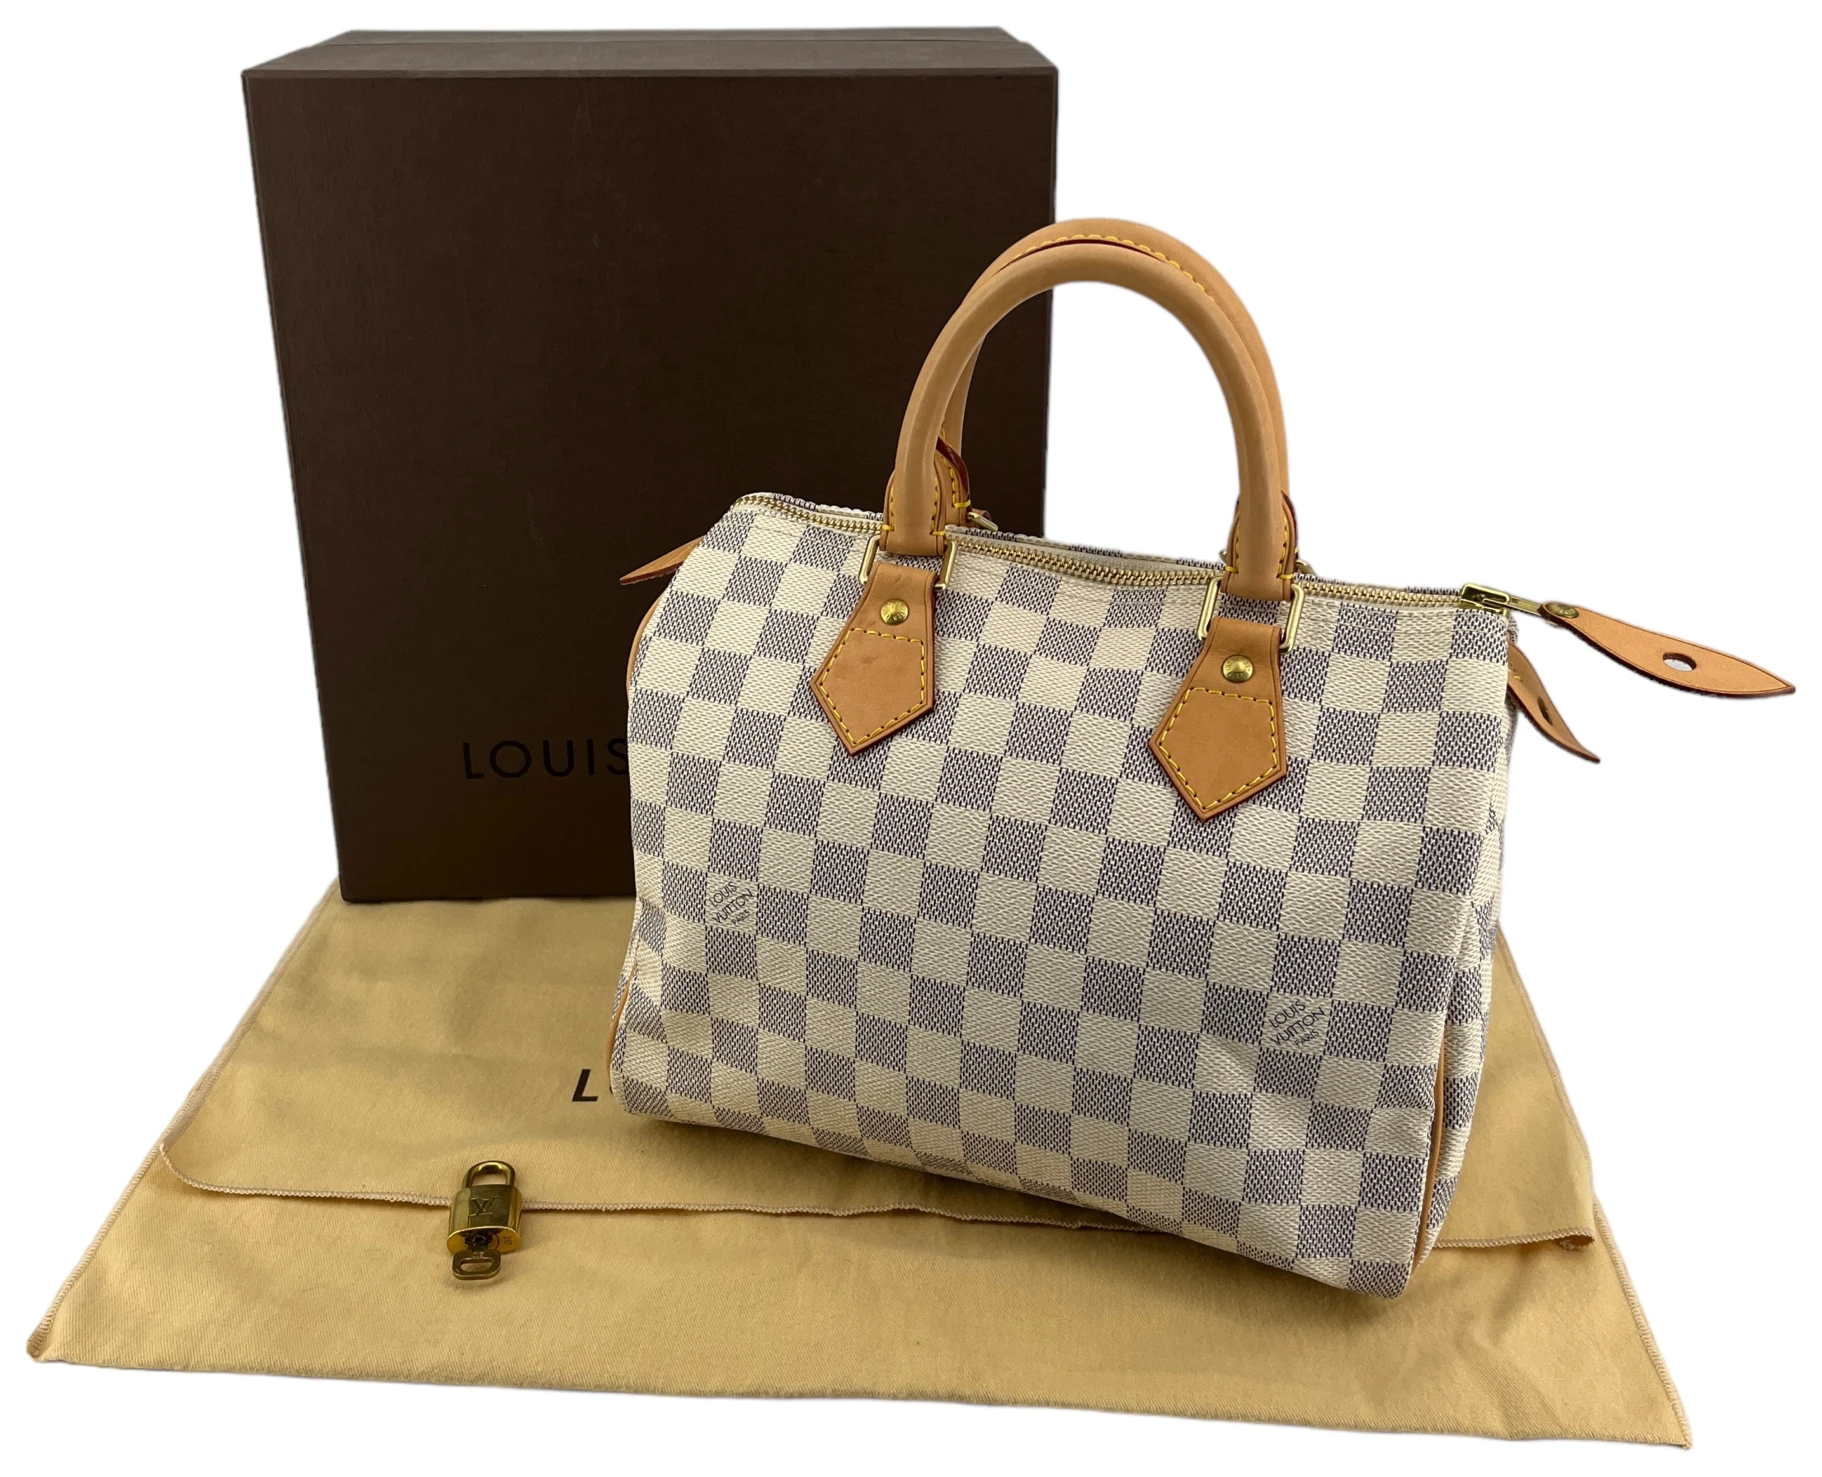 NEW! Genuine Louis Vuitton Damier Azur Canvas N41371 SPEEDY 25 –  VALLEYSPORTING